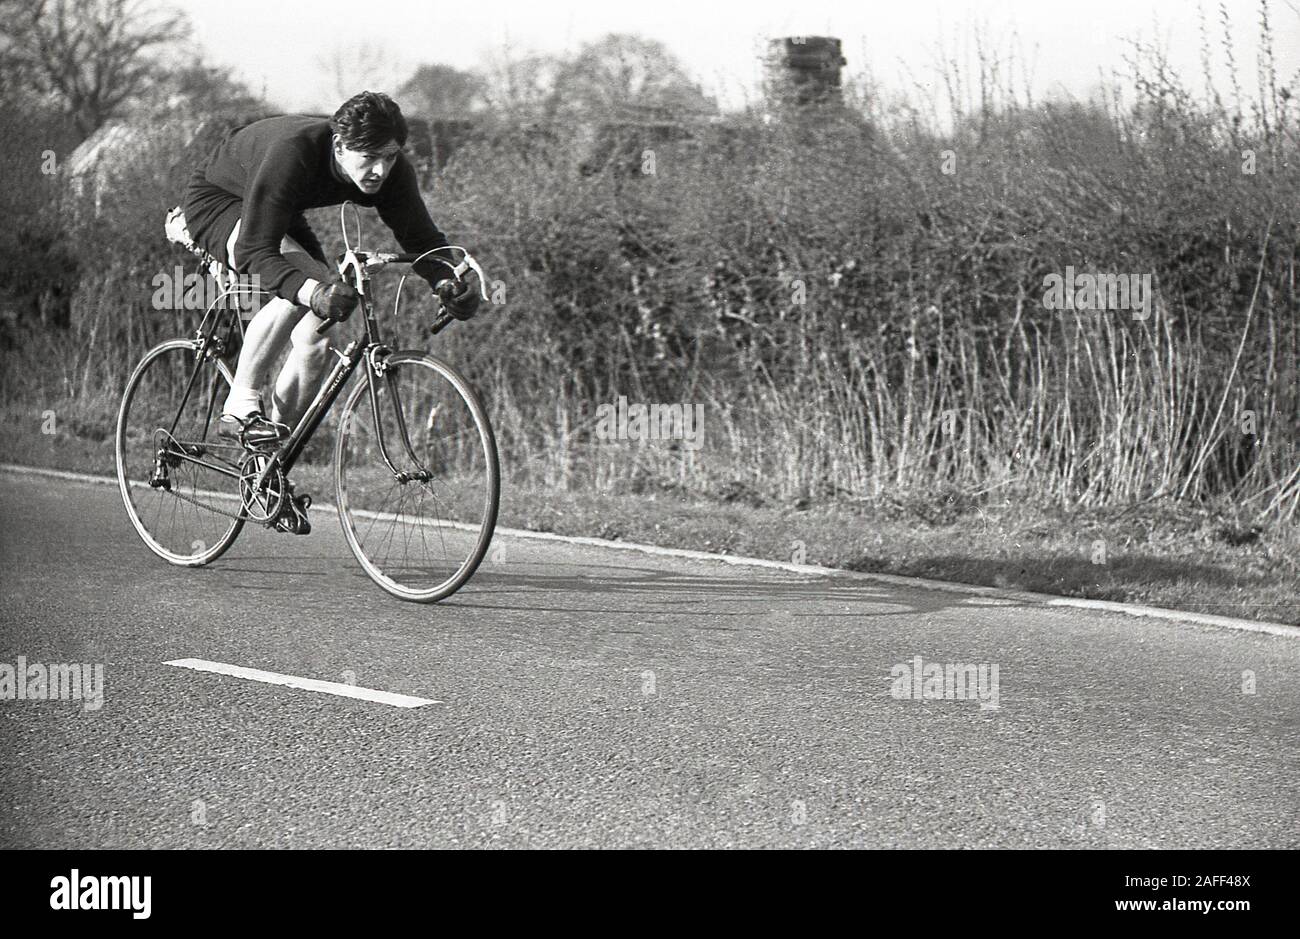 Années 1950, historique, un cycliste masculin sur une route de campagne prenant part à une course cycliste amateur, Angleterre, Royaume-Uni. Banque D'Images